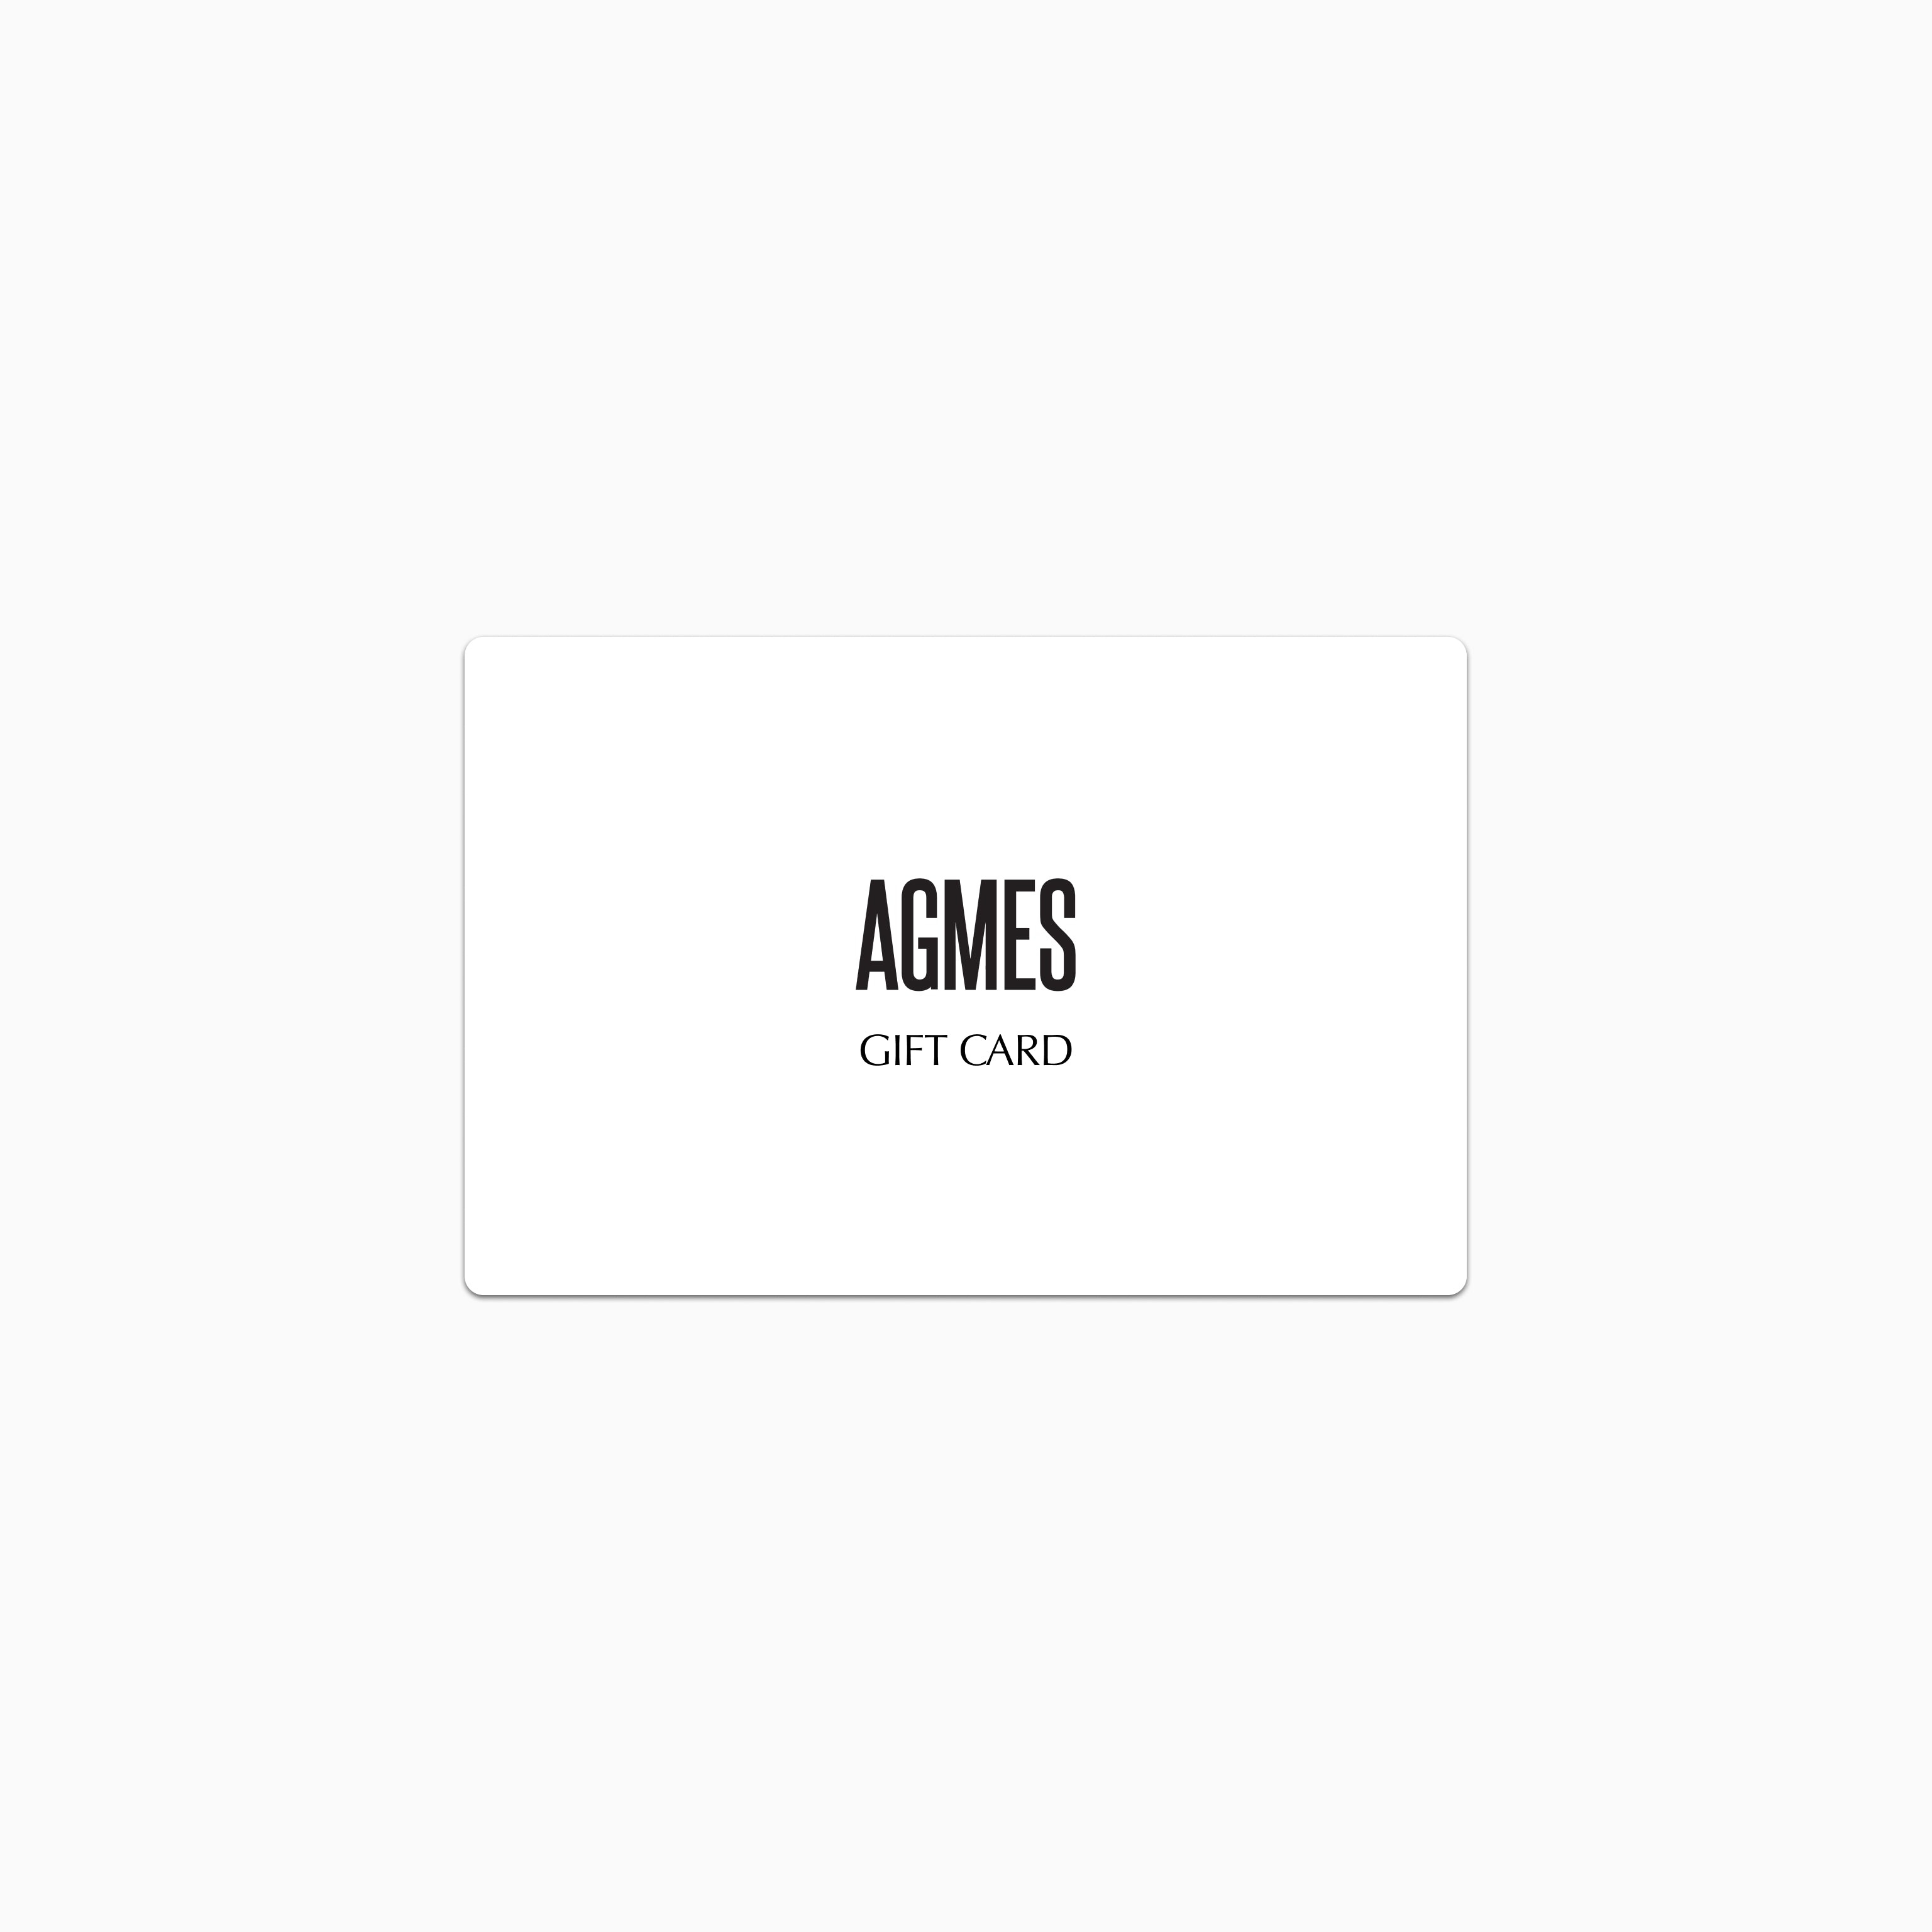 AGMES Gift Card